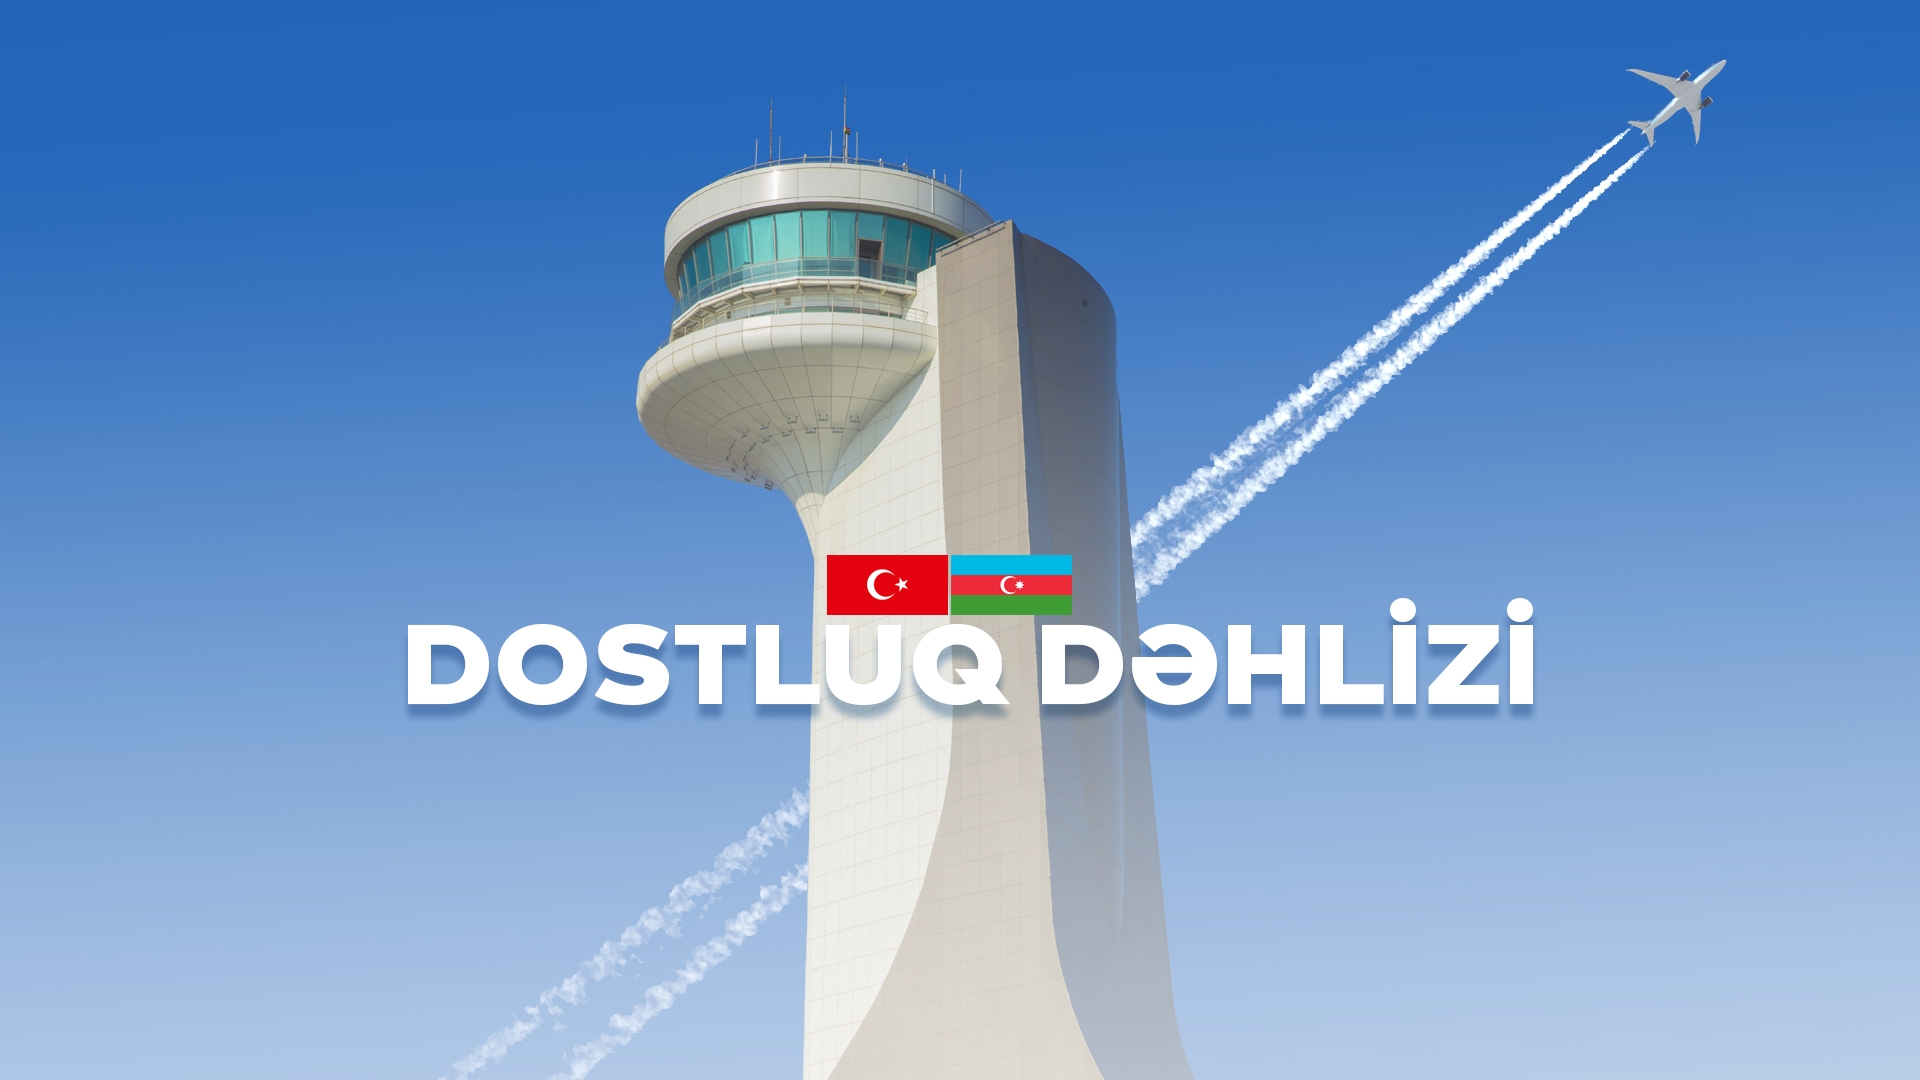 Azərbaycan və Türkiyə arasındakı yeni hava dəhlizi “Dostluq dəhlizi” adlandırılıb - VİDEO